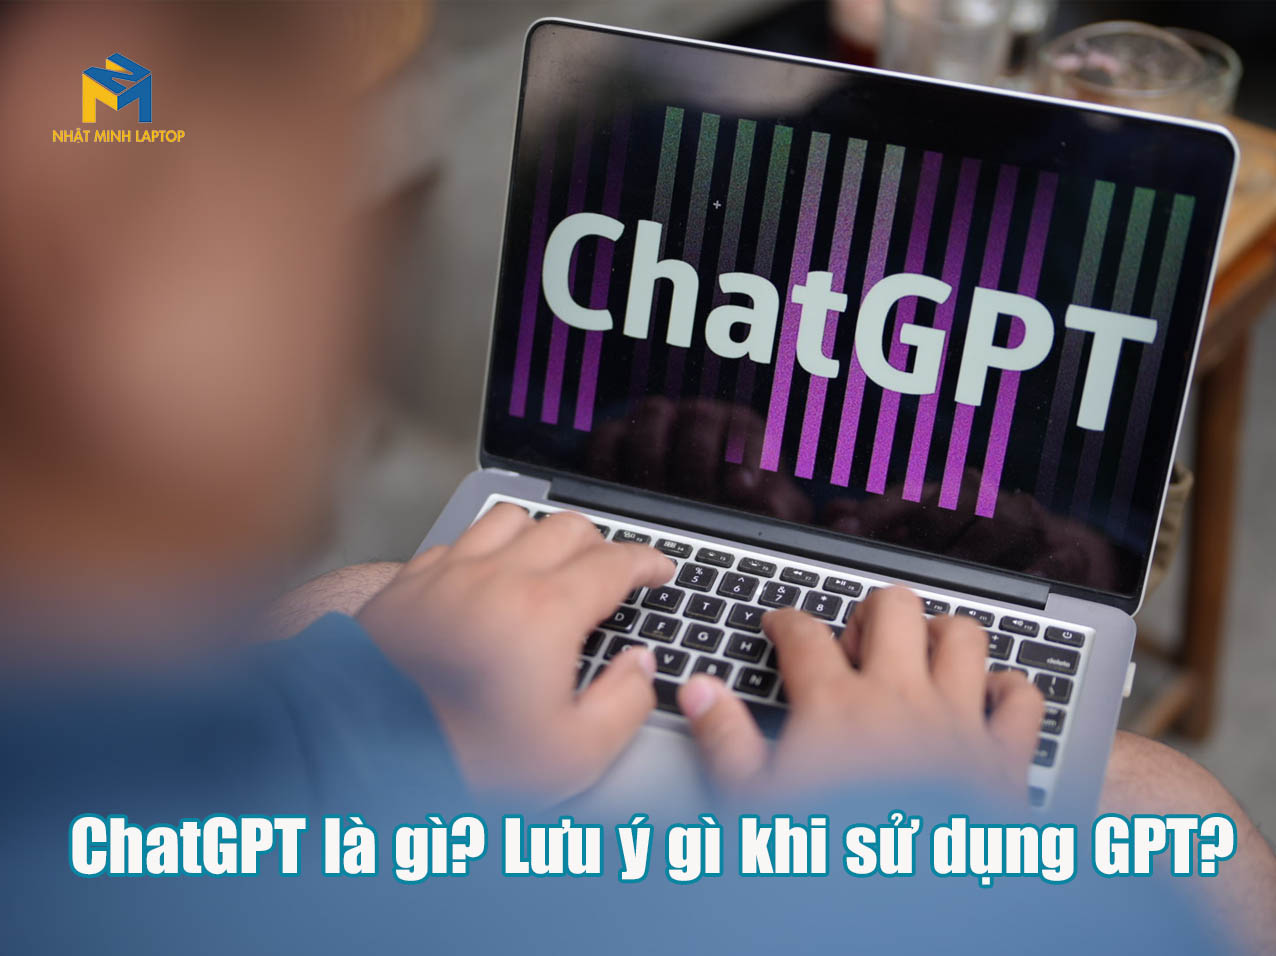 ChatGPT là gì? Những lưu ý gì khi sử dụng ChatGPT?